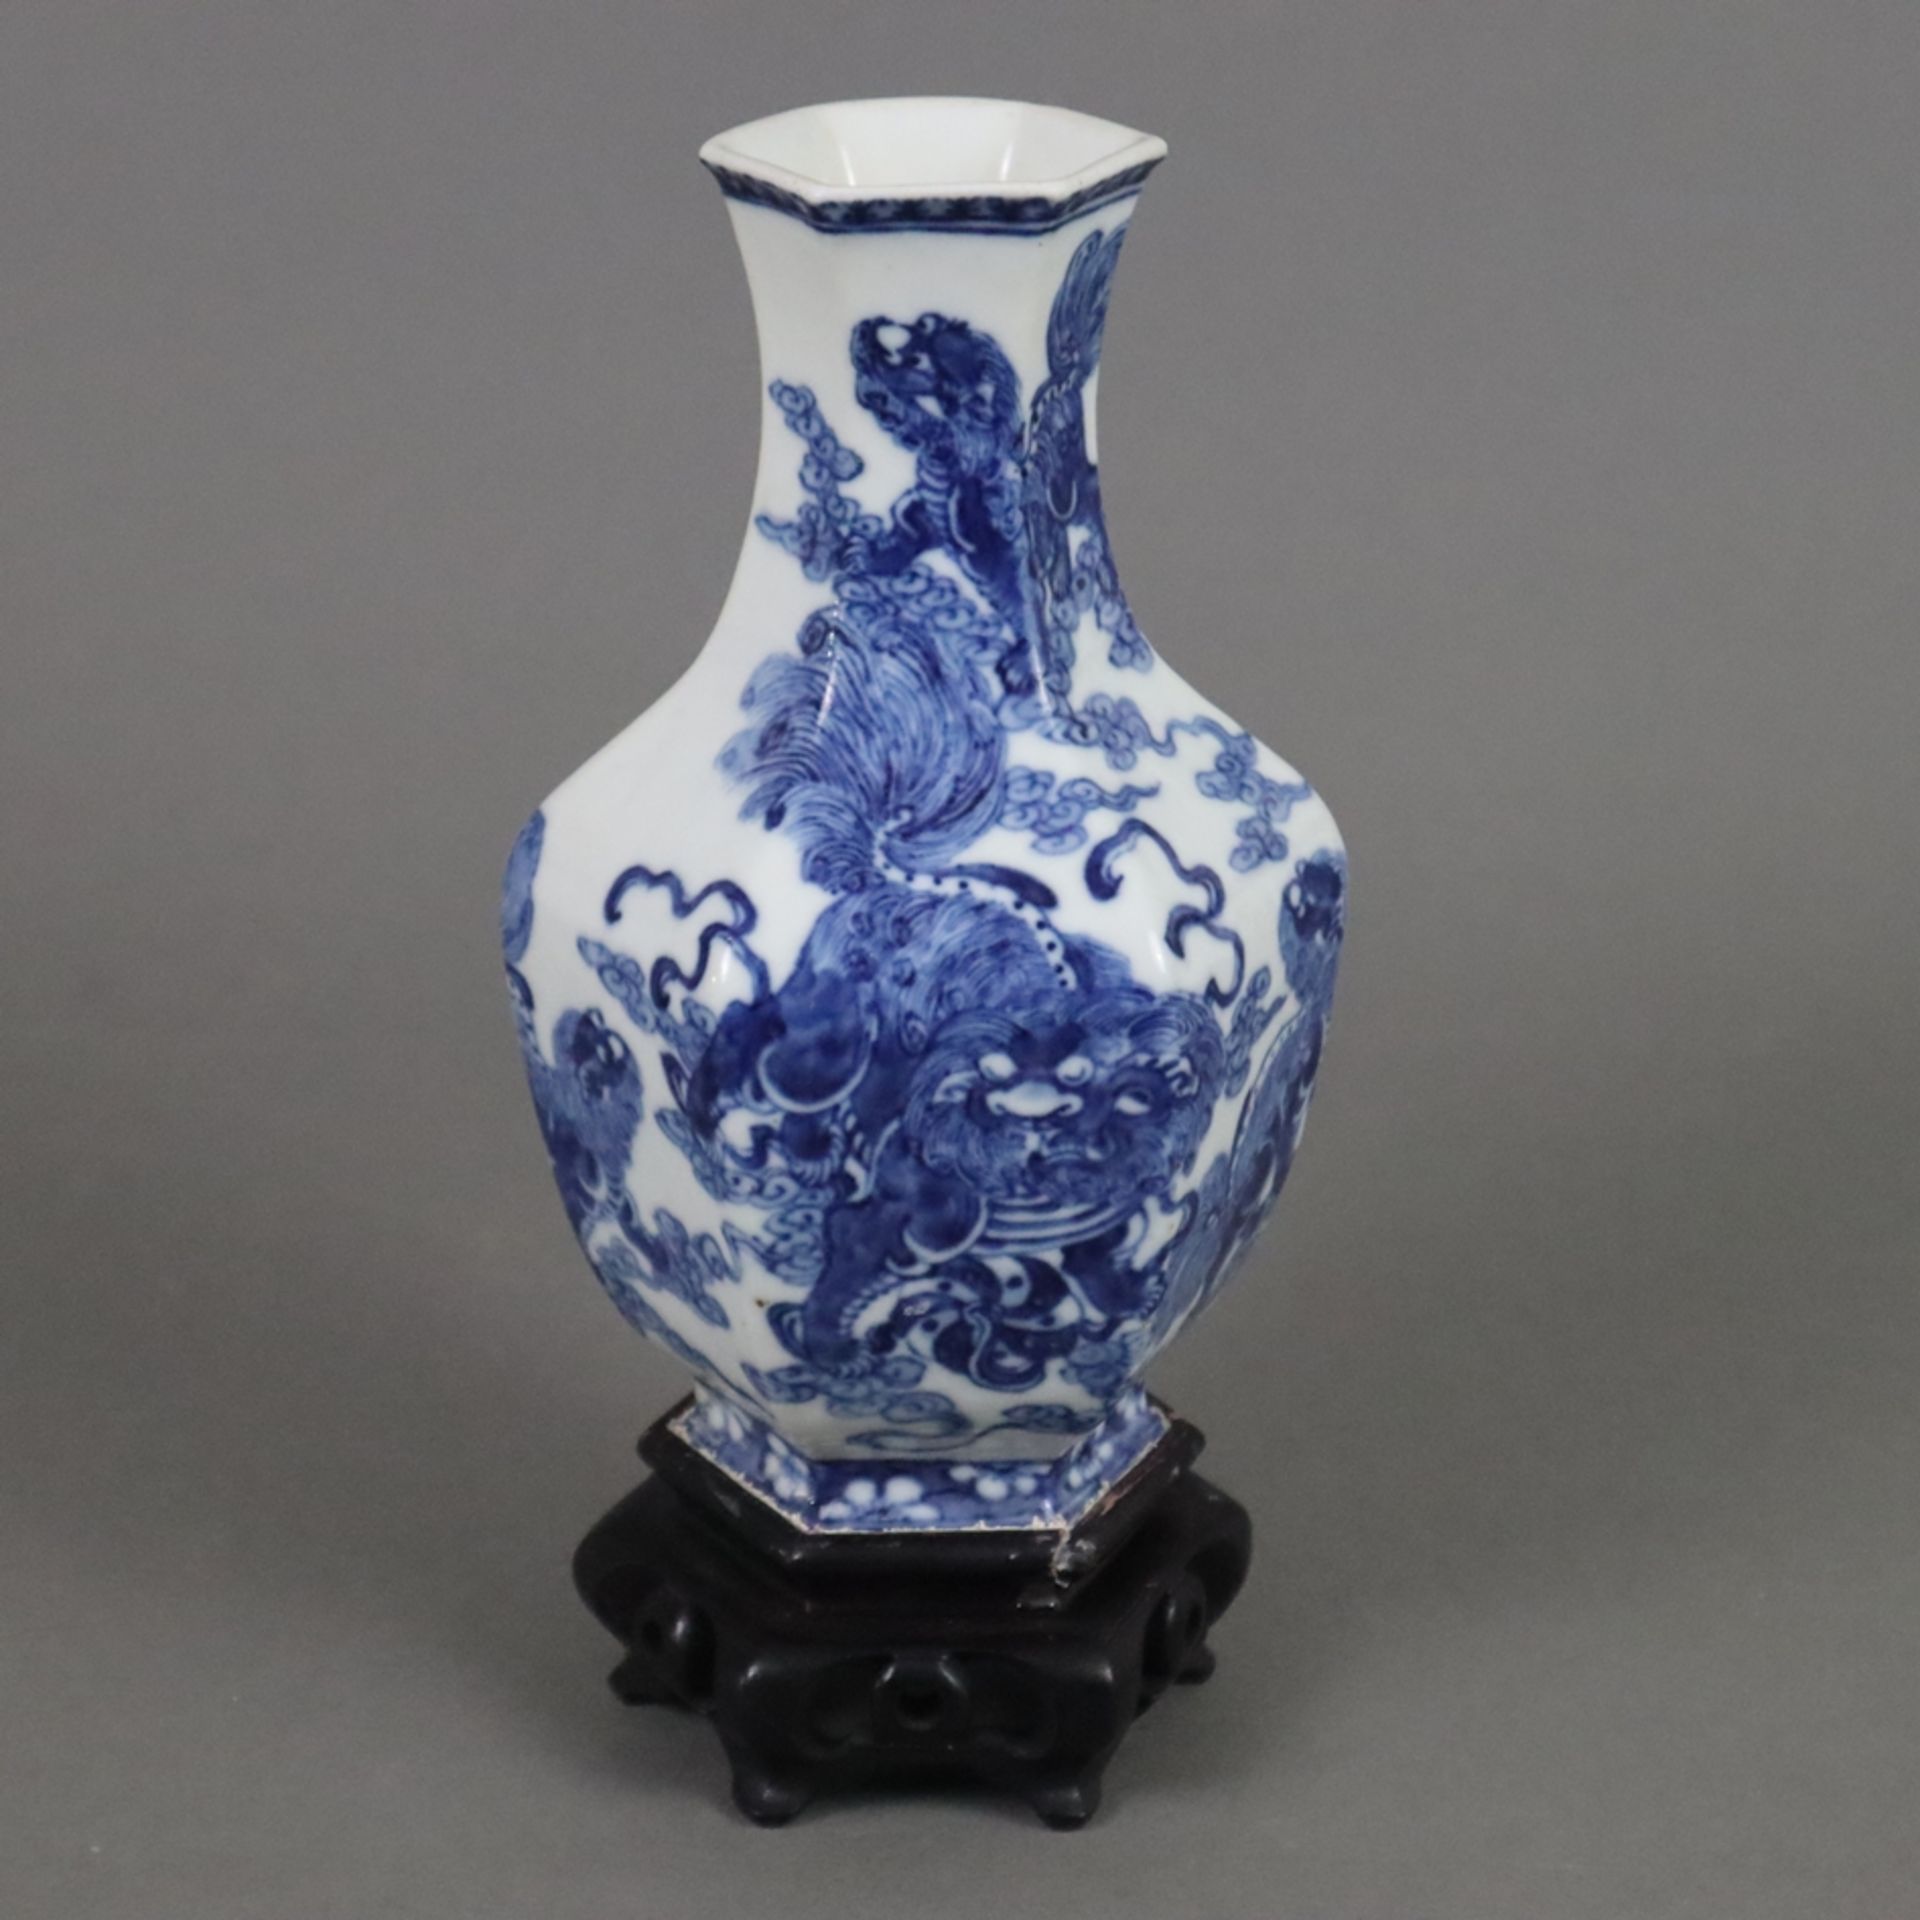 Blau-weiße Vase - Porzellan, gebauchte Balusterform 6-fach gekantet, umlaufend fein gemalter unterg